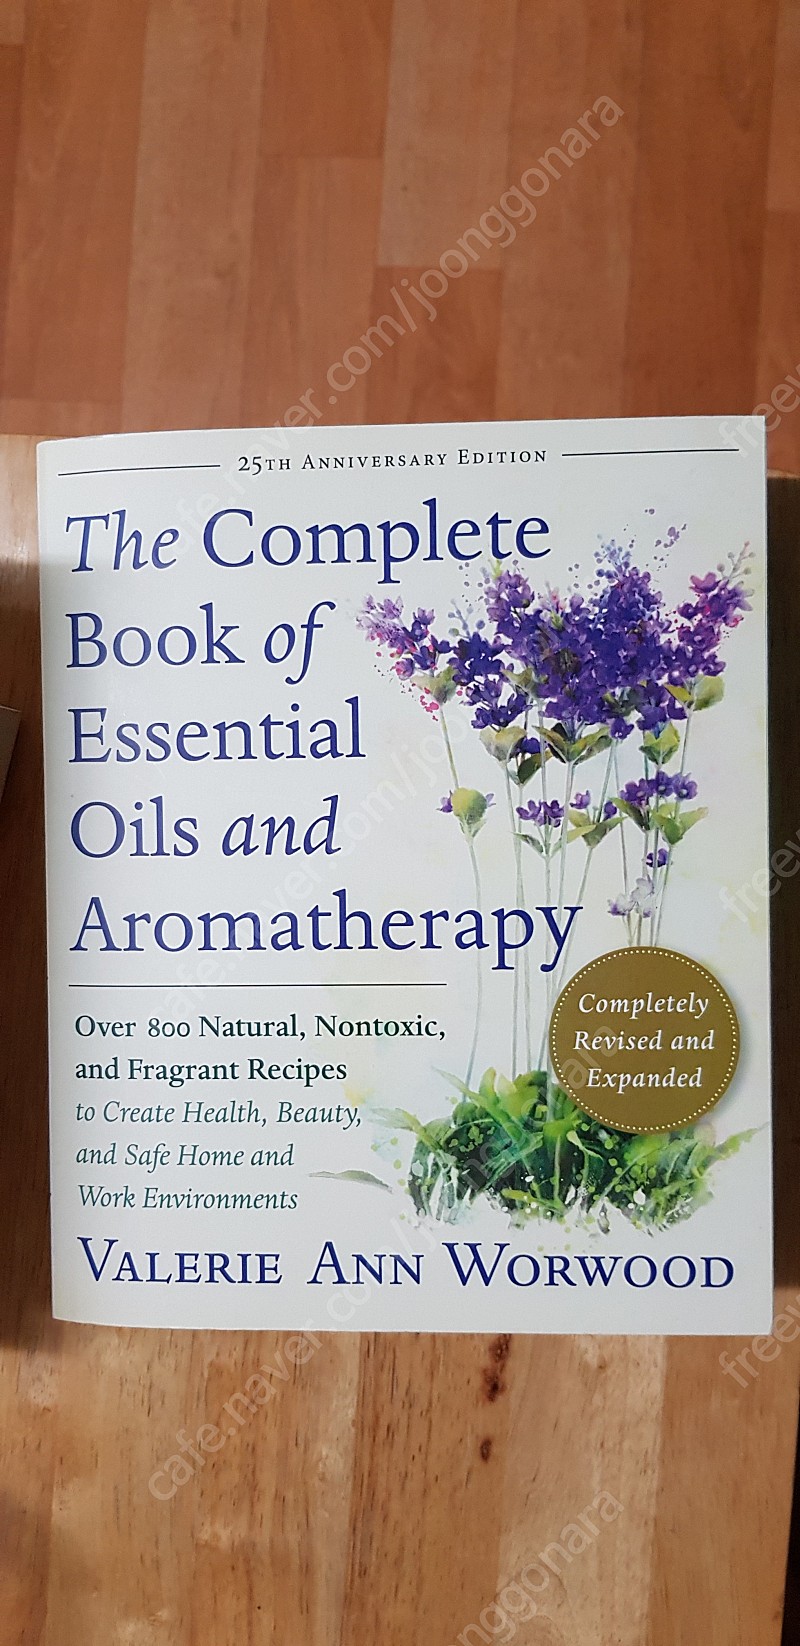 아로마테라피 원서, The Complete Book of Essential Oils and Aromatherapy 판매합니다